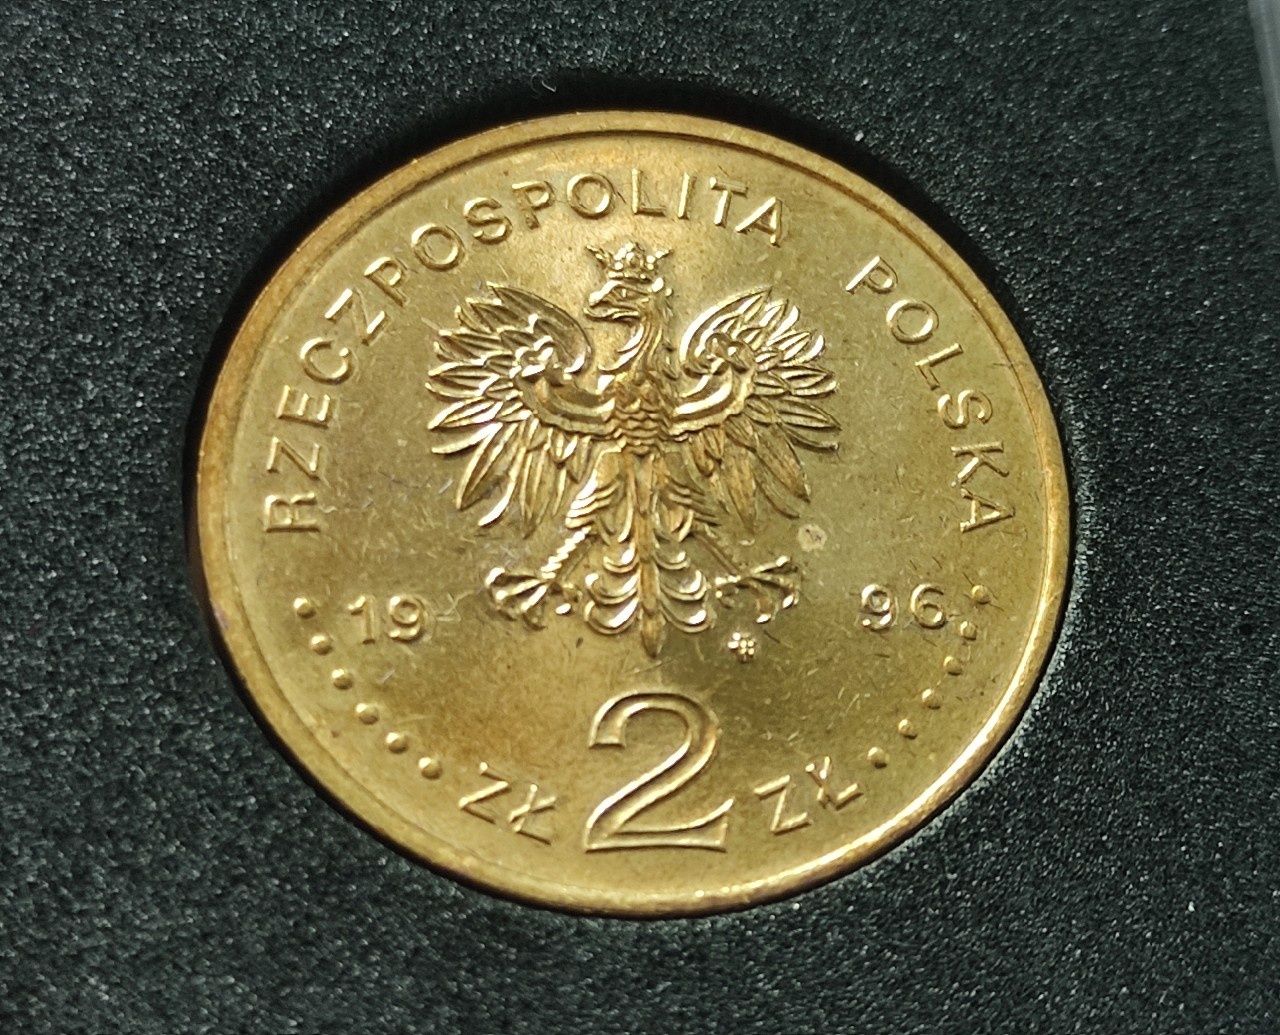 Komplet monet okoliczniściowych 2 zł 1996